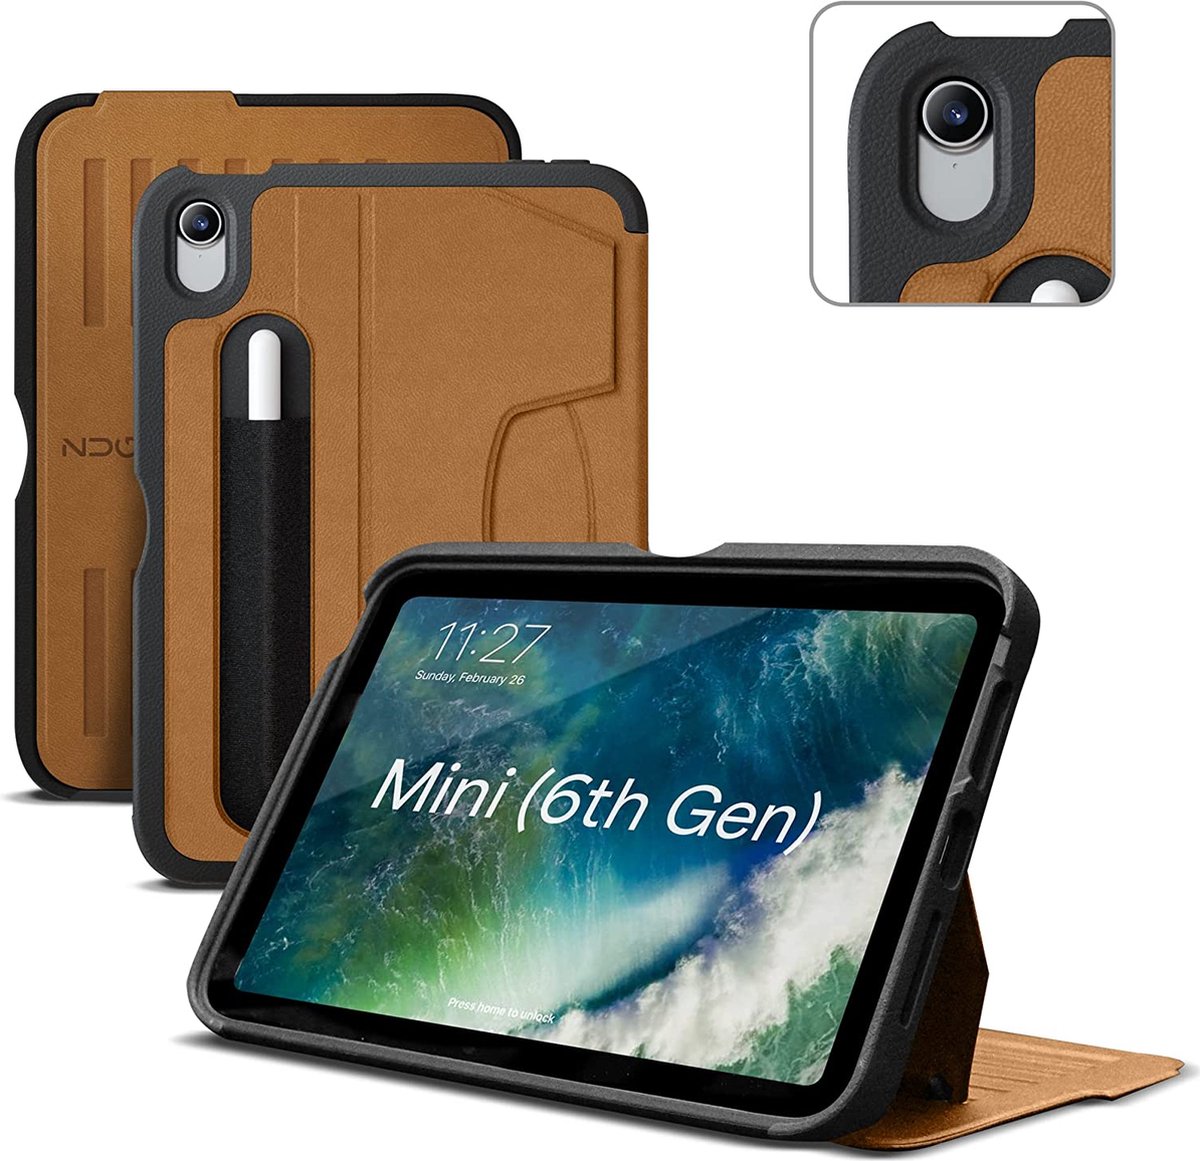 Zugu case - iPad mini Gen 6 (2021) - oersterke luxe flip-over case - volledige 360˚ bescherming – met multifunctionele standaard functie – geschikt voor Apple Pencil - Stealth Black - Gognac bruin